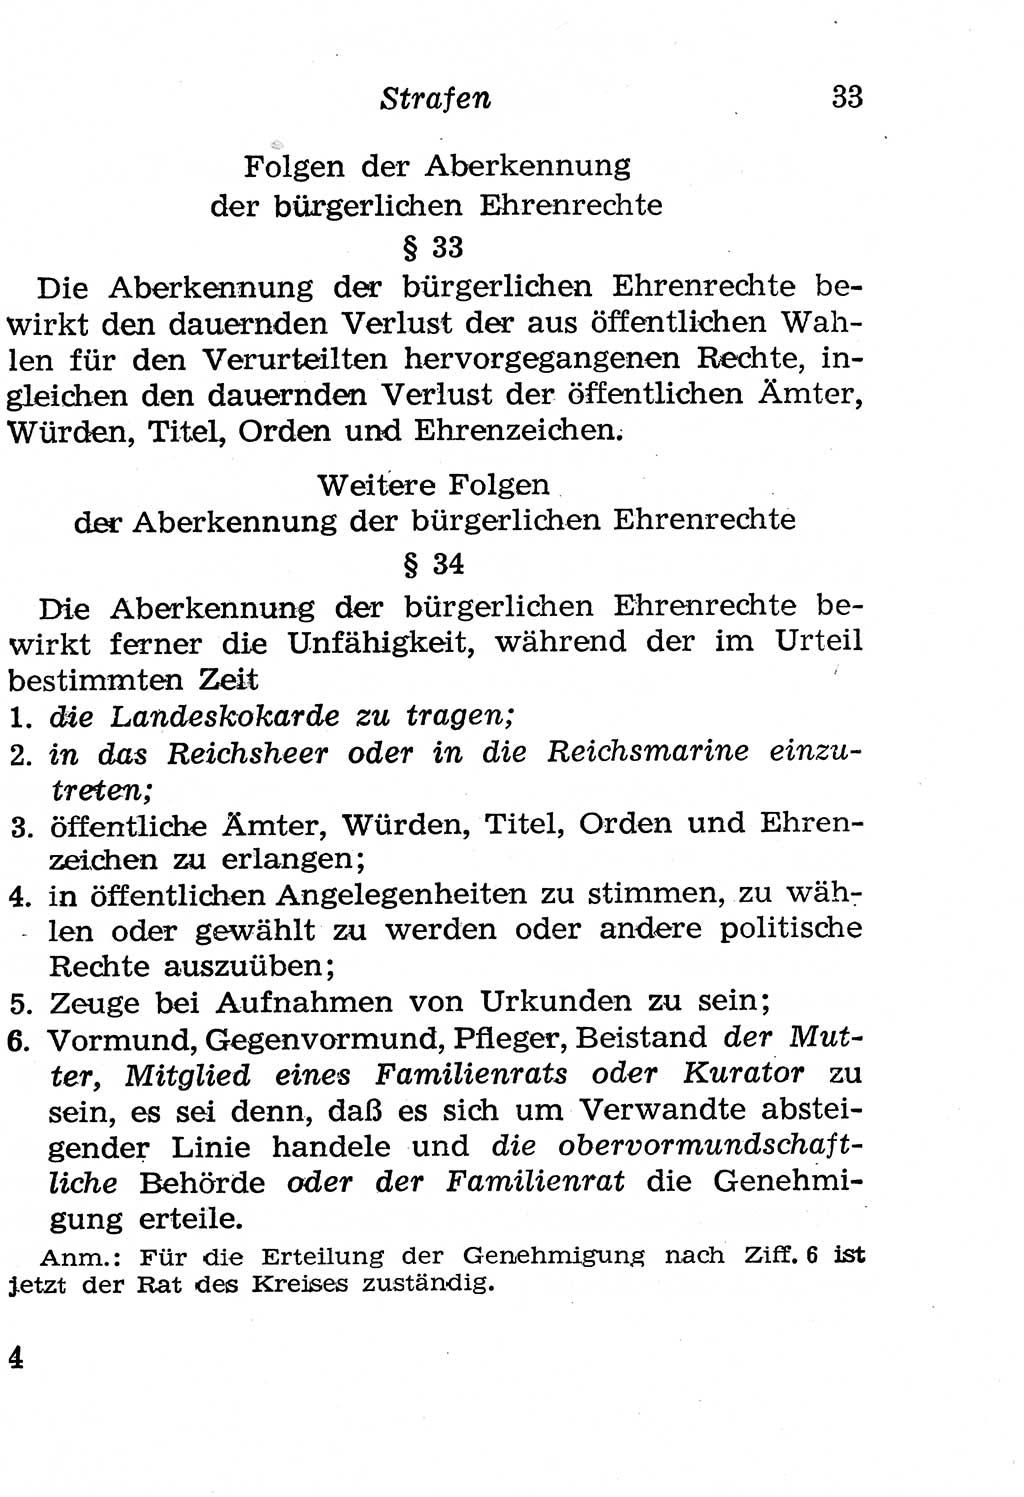 Strafgesetzbuch (StGB) und andere Strafgesetze [Deutsche Demokratische Republik (DDR)] 1958, Seite 33 (StGB Strafges. DDR 1958, S. 33)